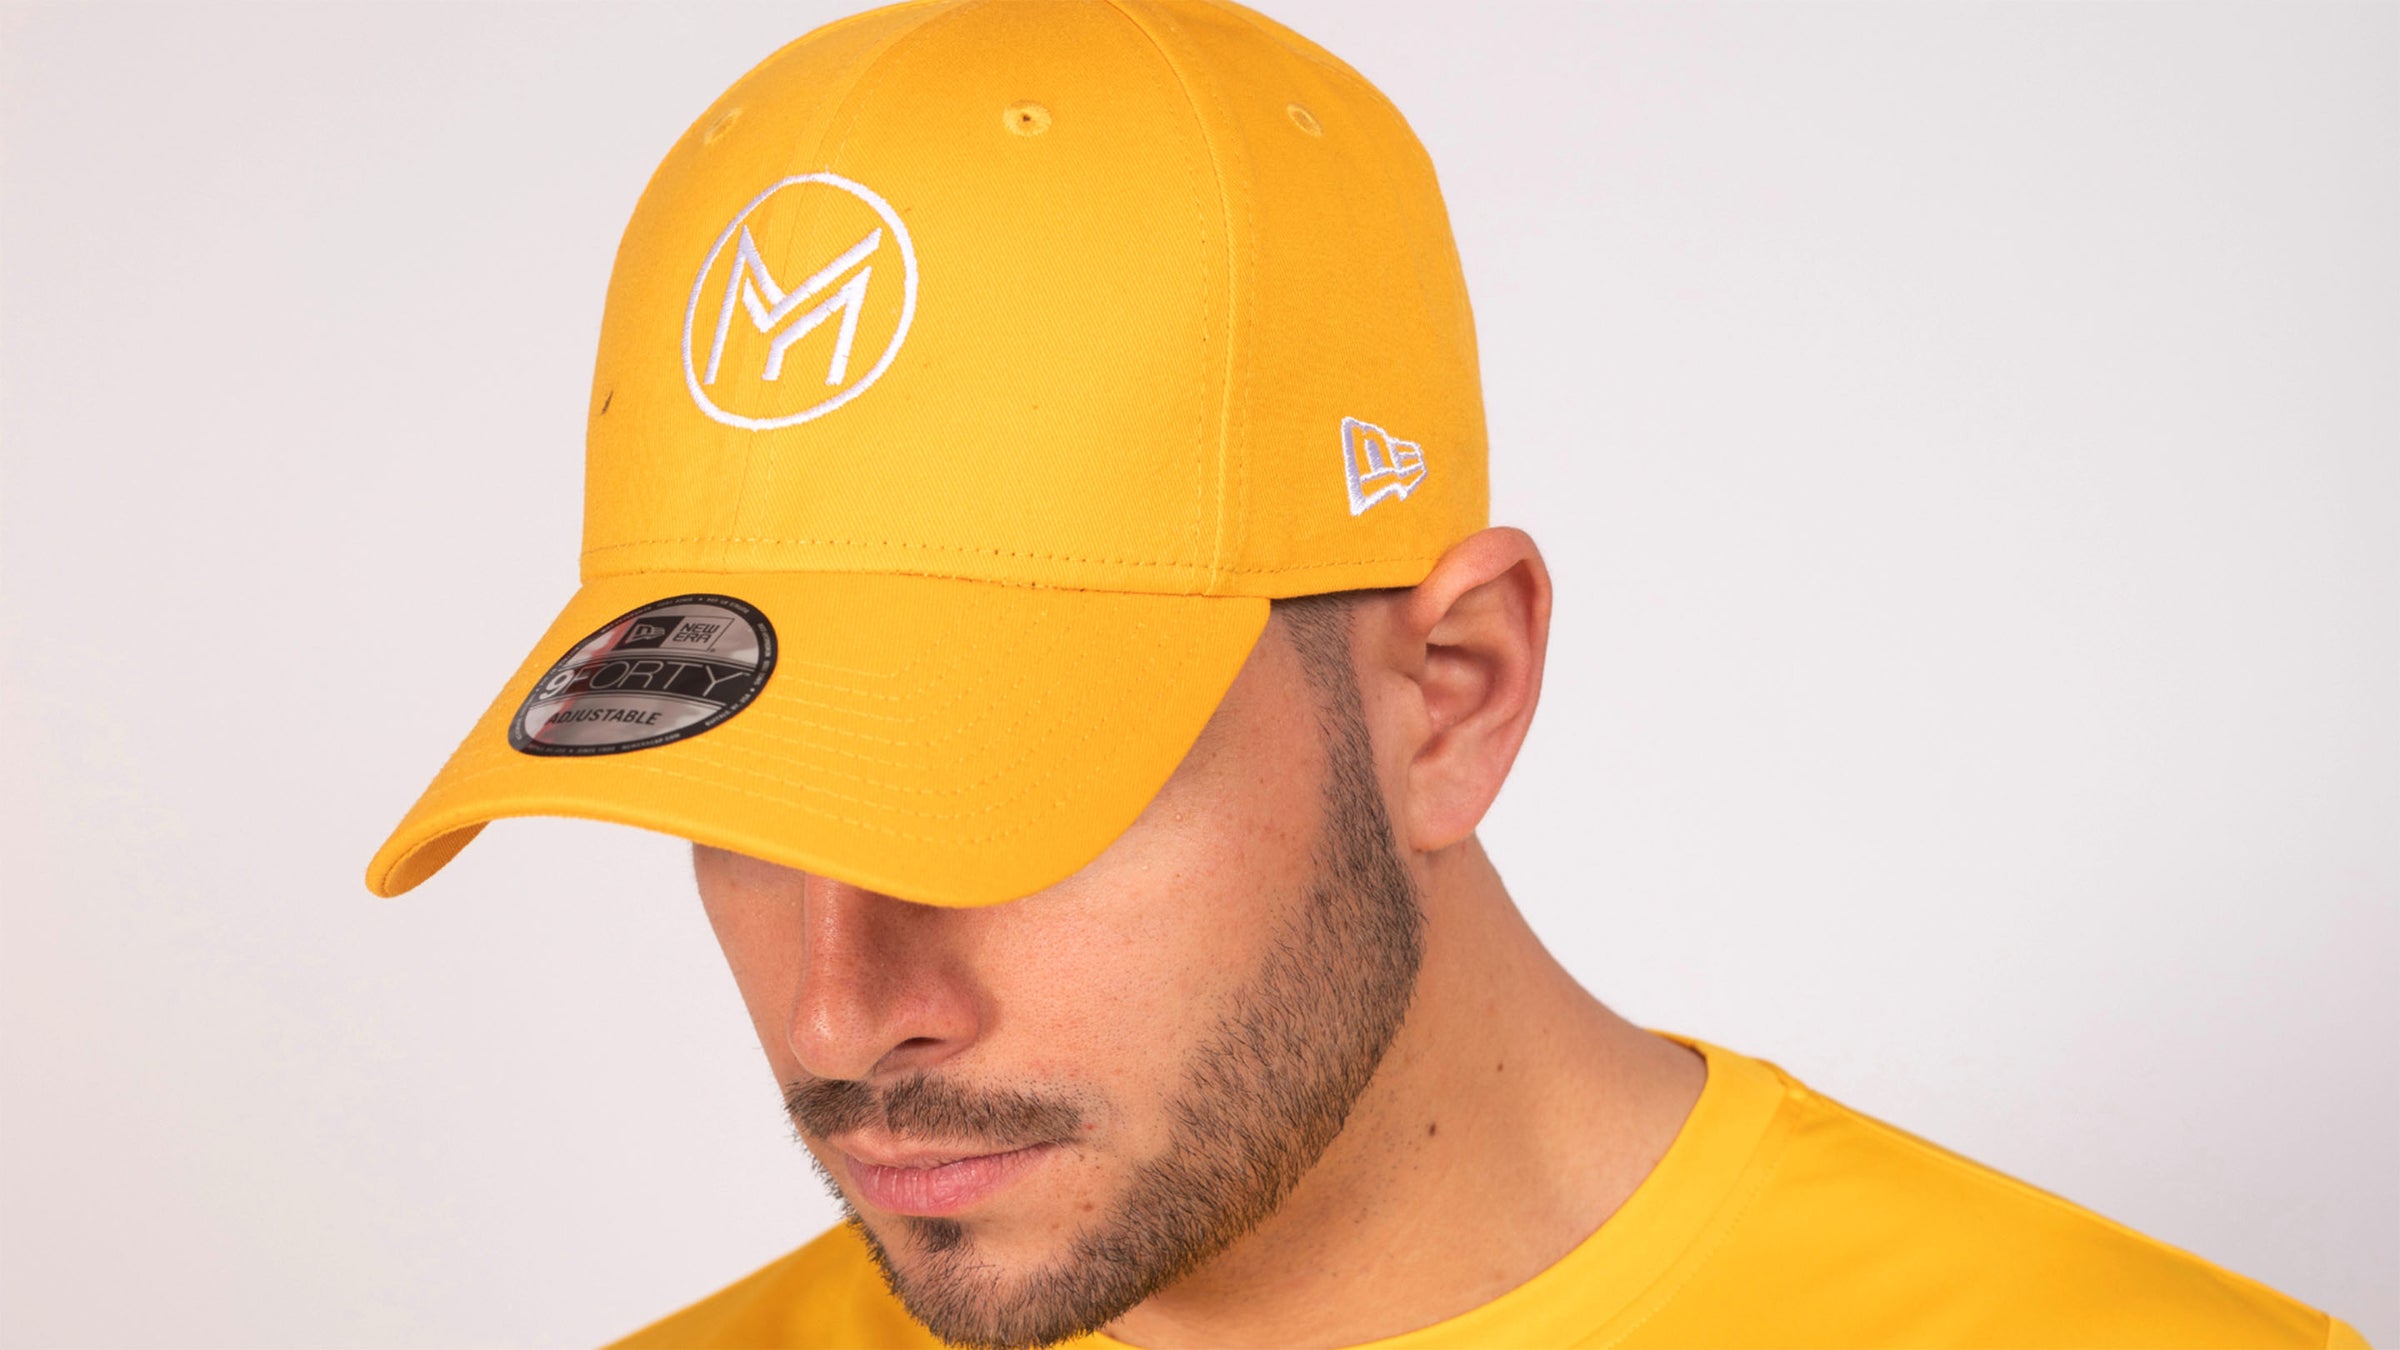 gros plan sur la tête d'un homme avec un t-shirt jaune et une casquette de la marque Mucho